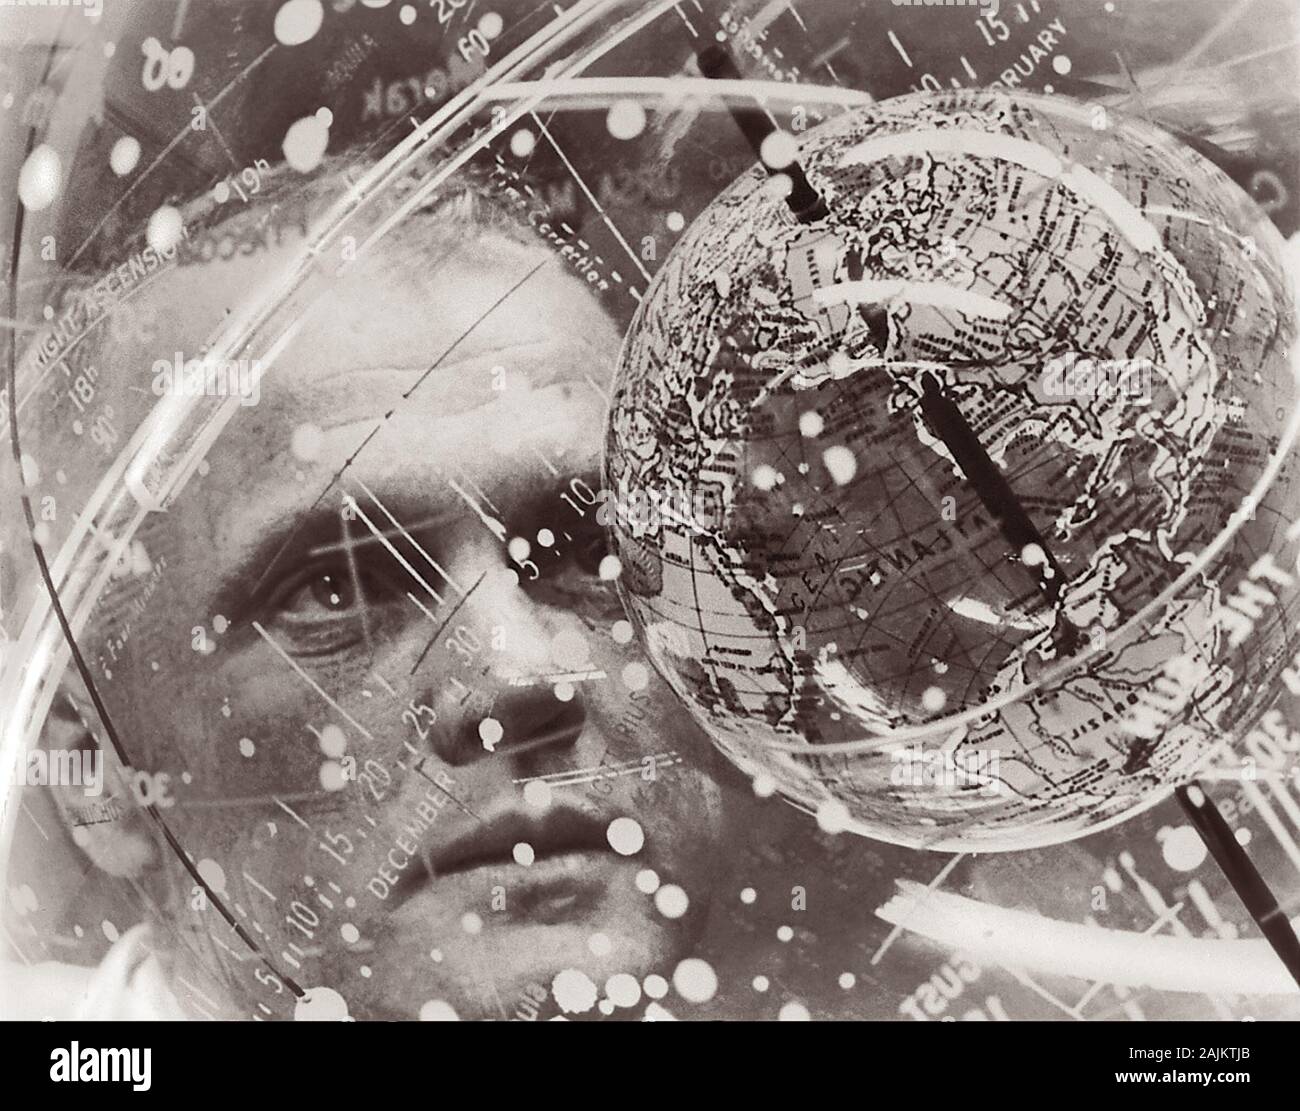 El astronauta estadounidense John Herschel Glenn Jr. (1921-2016), buscando en un globo espacial conocida como un "dispositivo de entrenamiento Celeste' en el laboratorio aeromédico en Cabo Cañaveral, Florida. Glenn es mostrado aquí en febrero de 1962, el mismo mes se convirtió en el primer americano en órbita alrededor de la Tierra de NASA Mercury-Atlas 6 Misión. Foto de stock